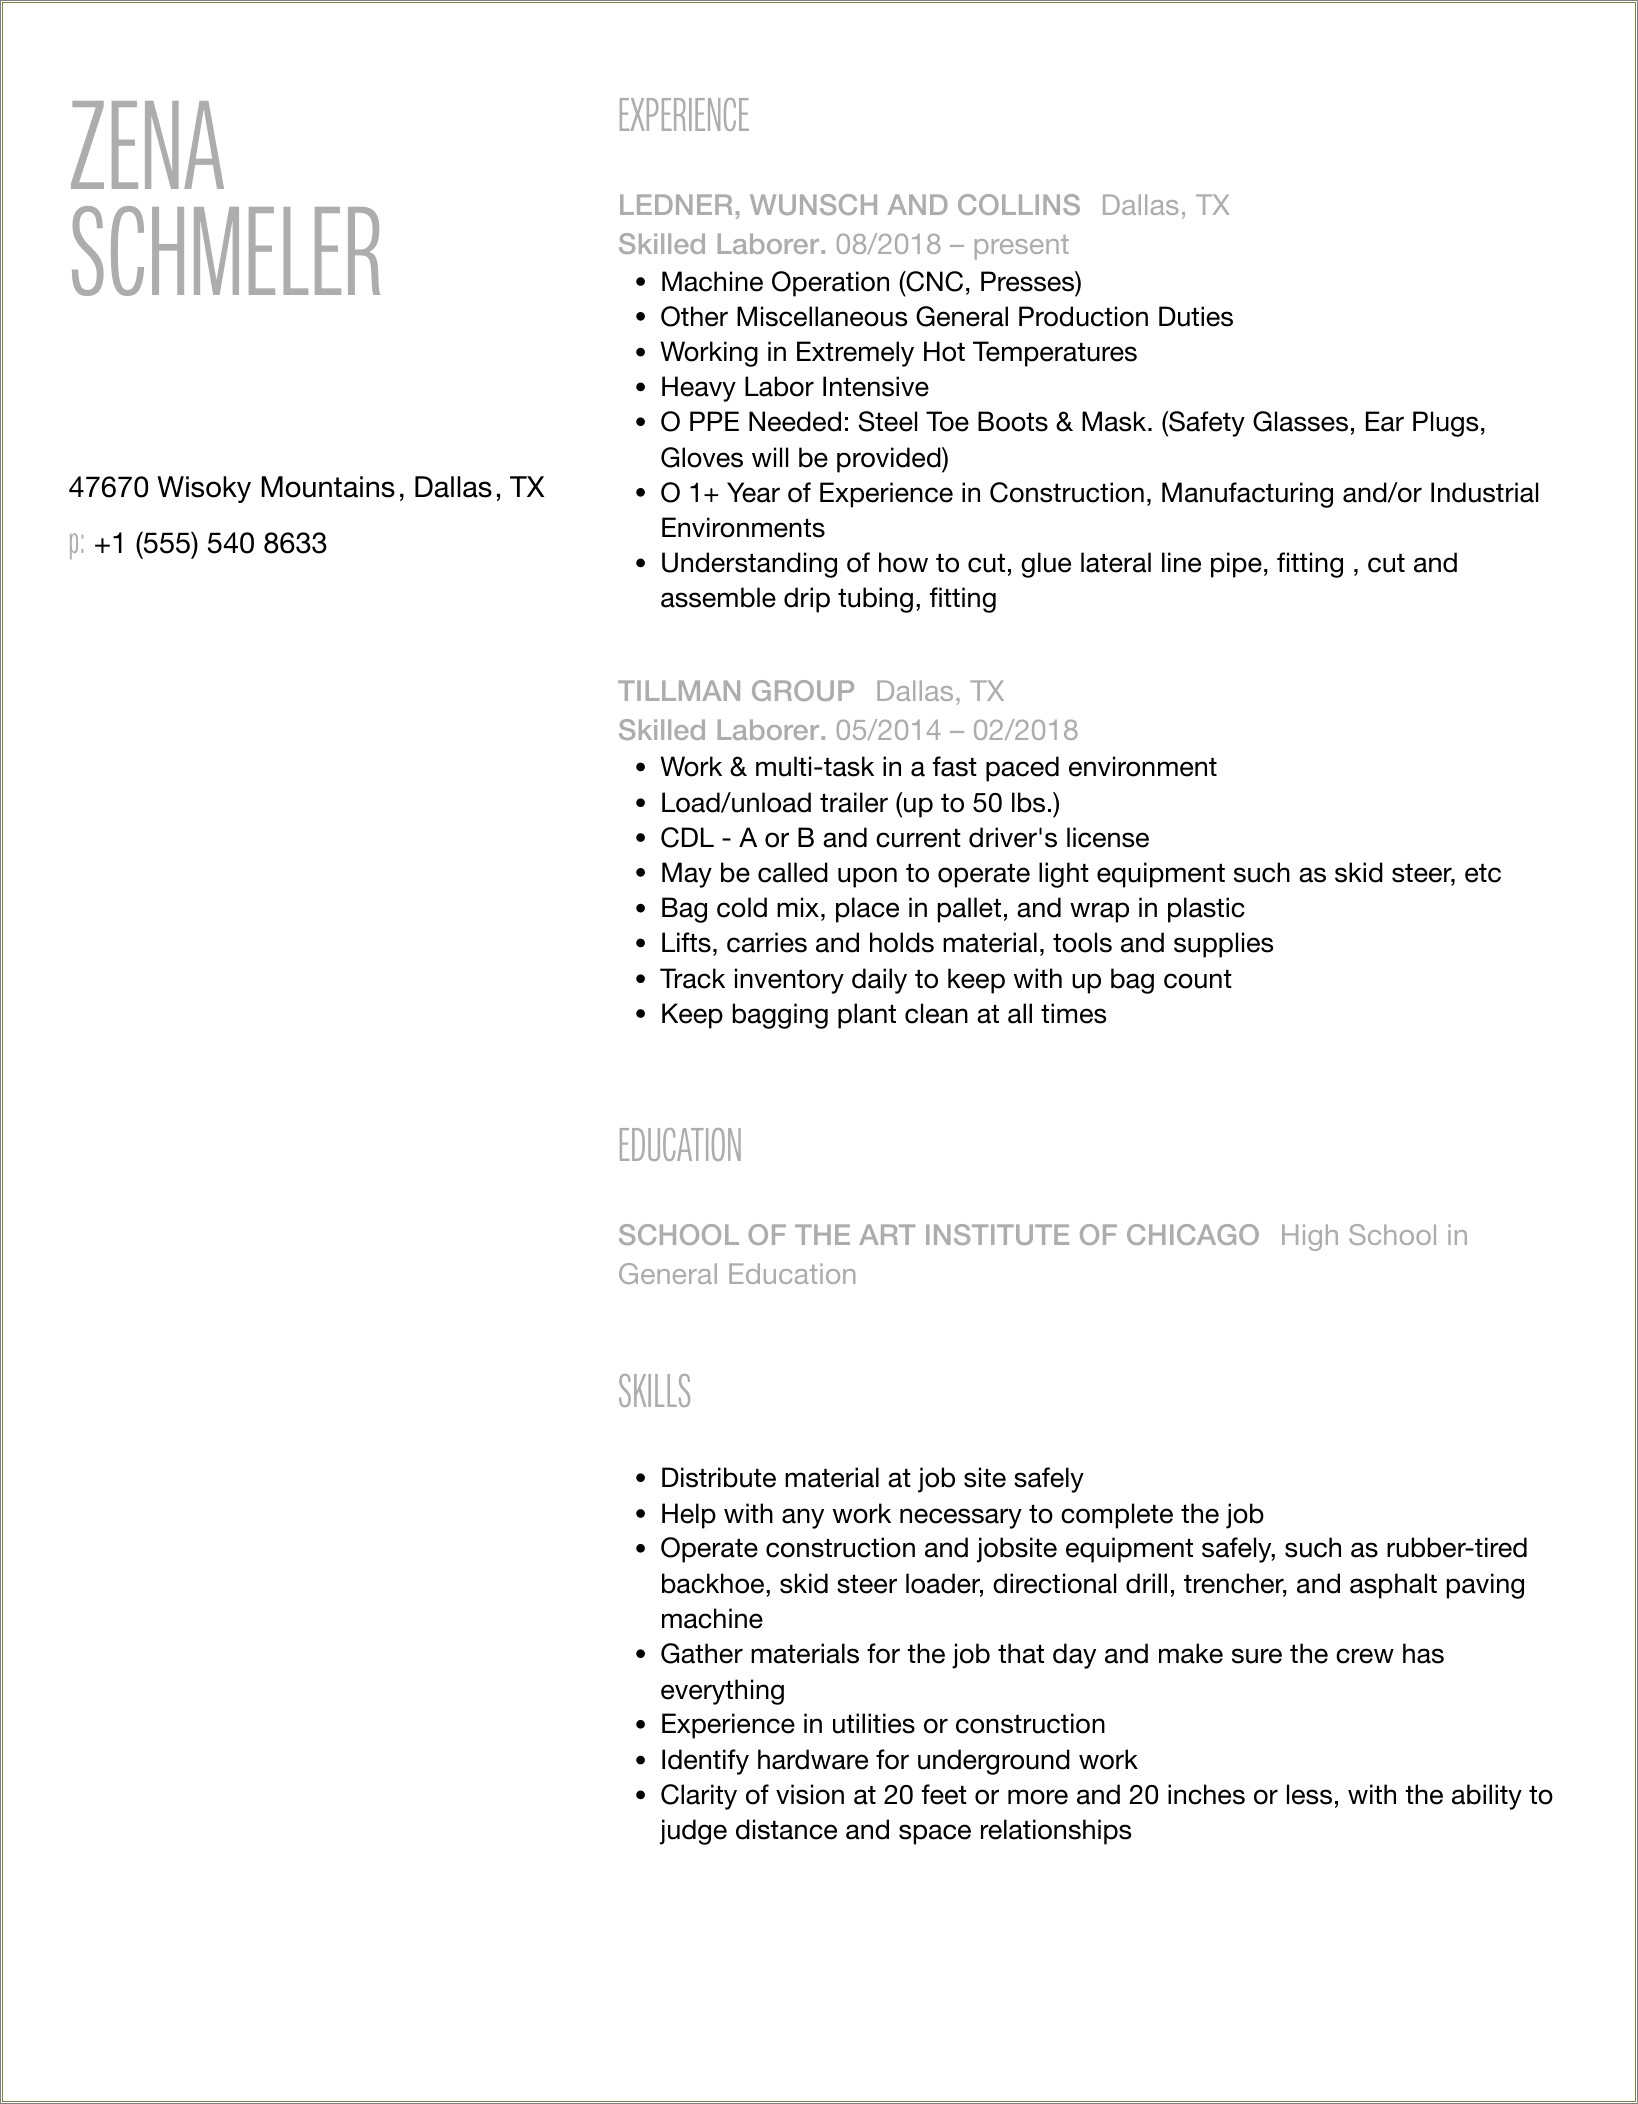 Sample Resume Format For Skilled Worker